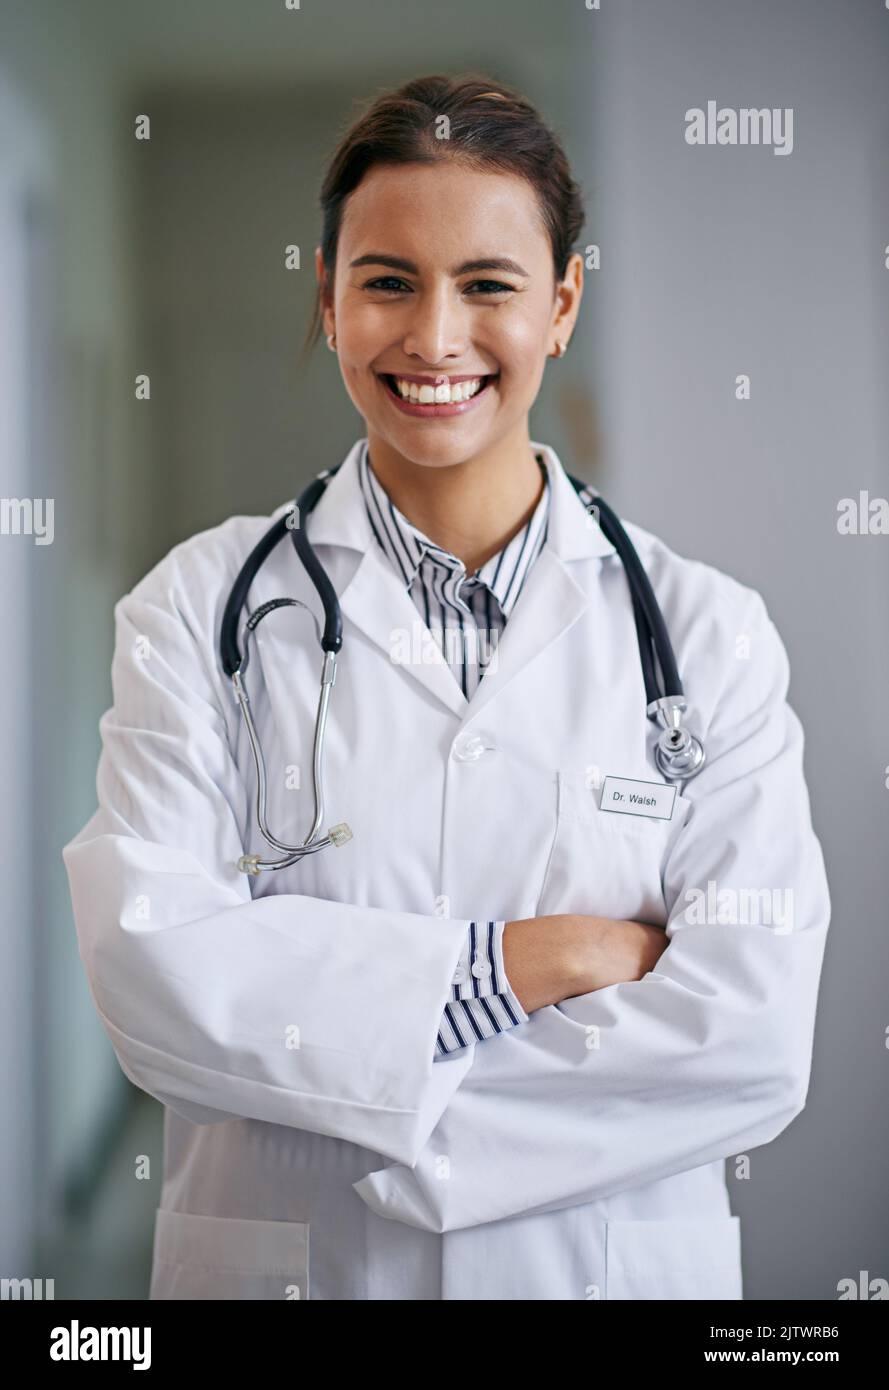 Der Arzt wird Sie jetzt sehen. Porträt einer fröhlichen und selbstbewussten jungen Ärztin, die ihre Arme kreuzt. Stockfoto